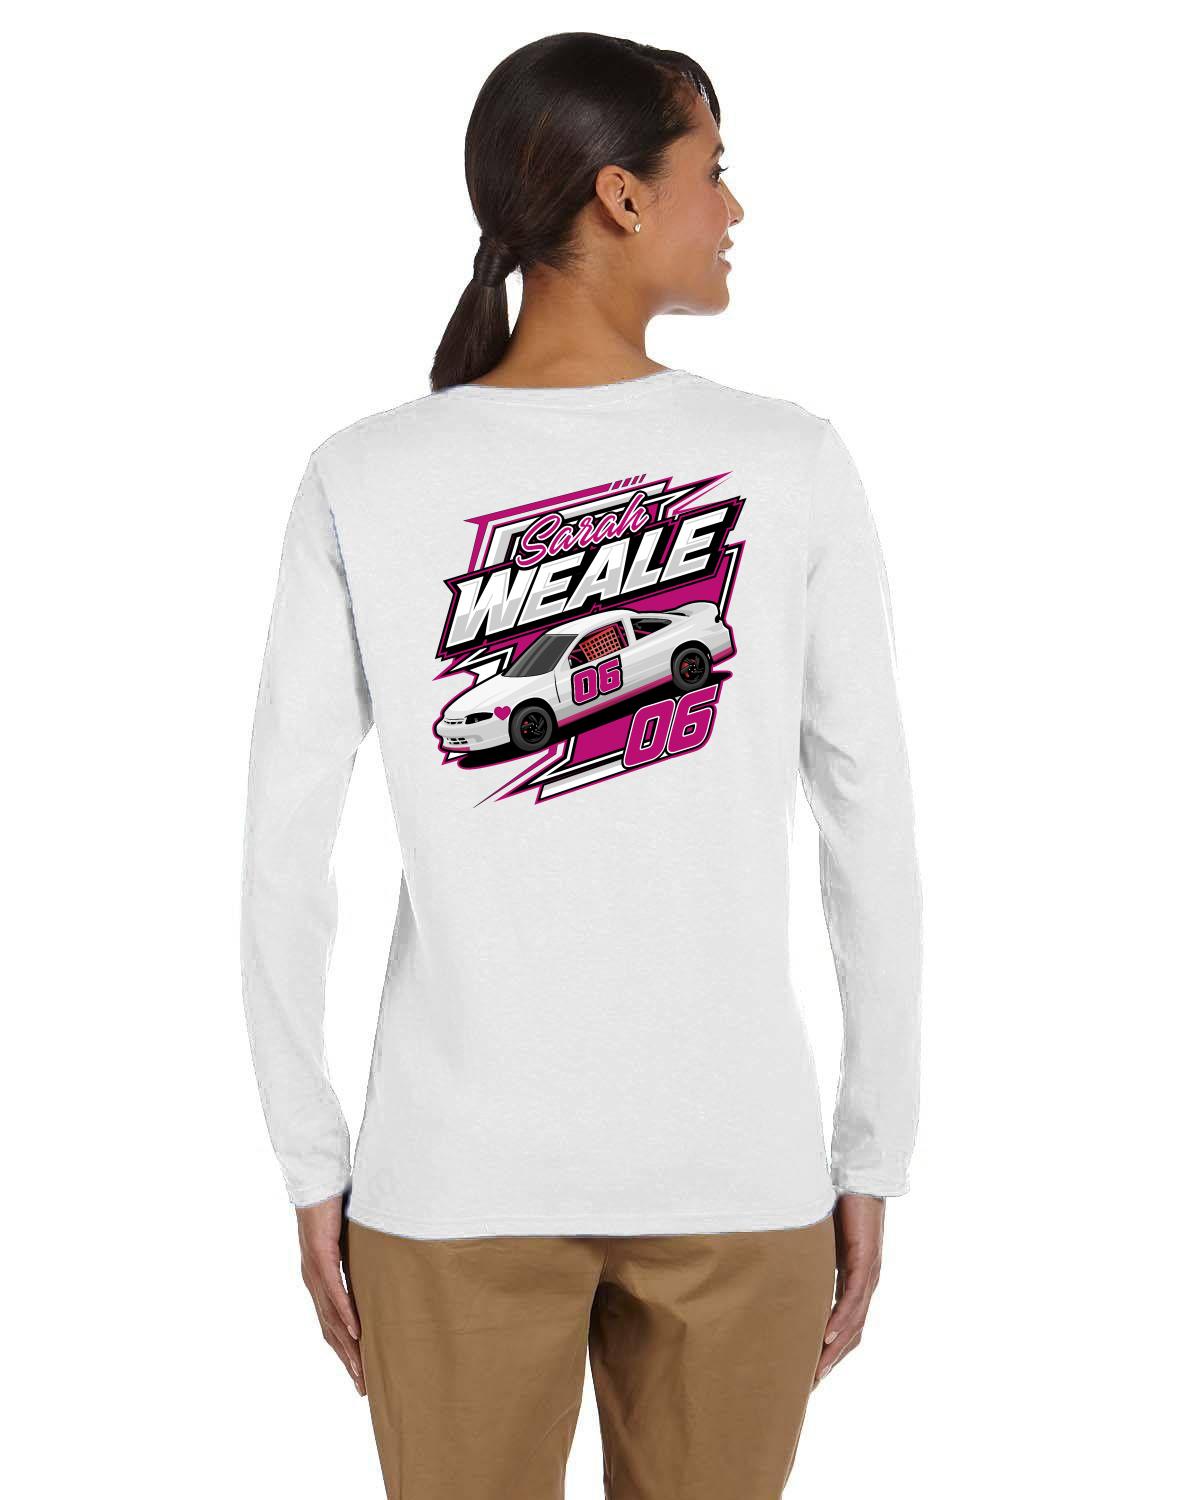 Sarah Weale Racing Ladies' Long-Sleeve T-Shirt